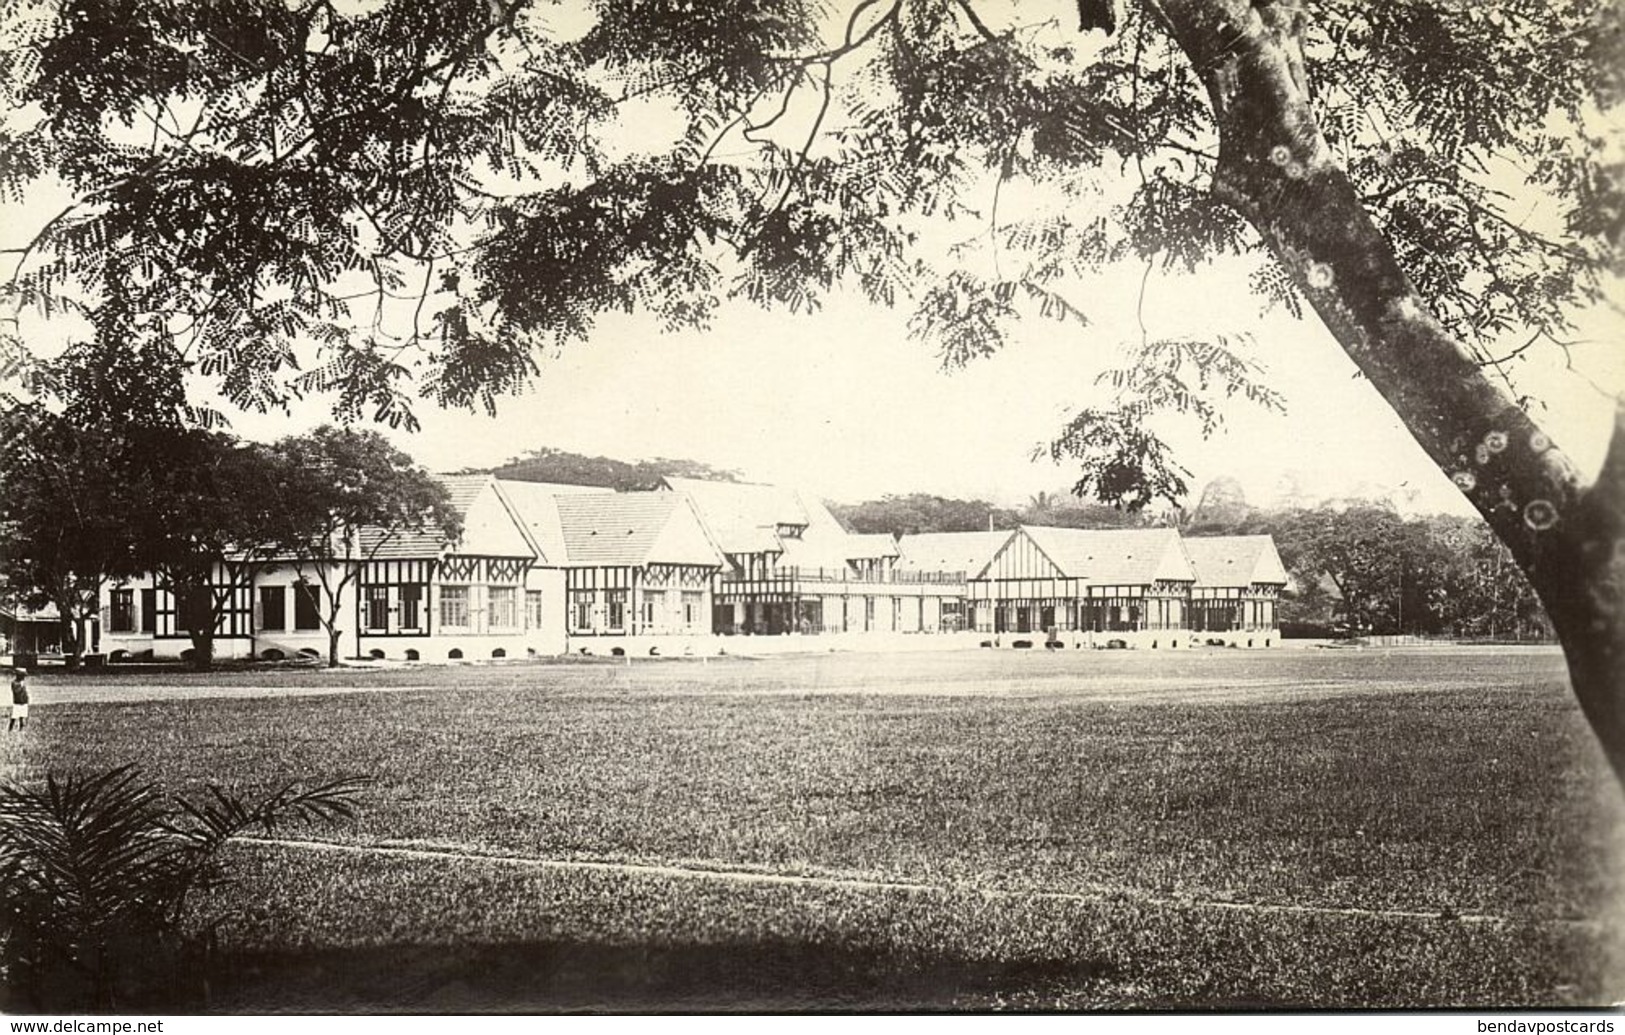 Malay Malaysia, KUALA LUMPUR, Selangor Club (1910s) RPPC Postcard - Malaysia